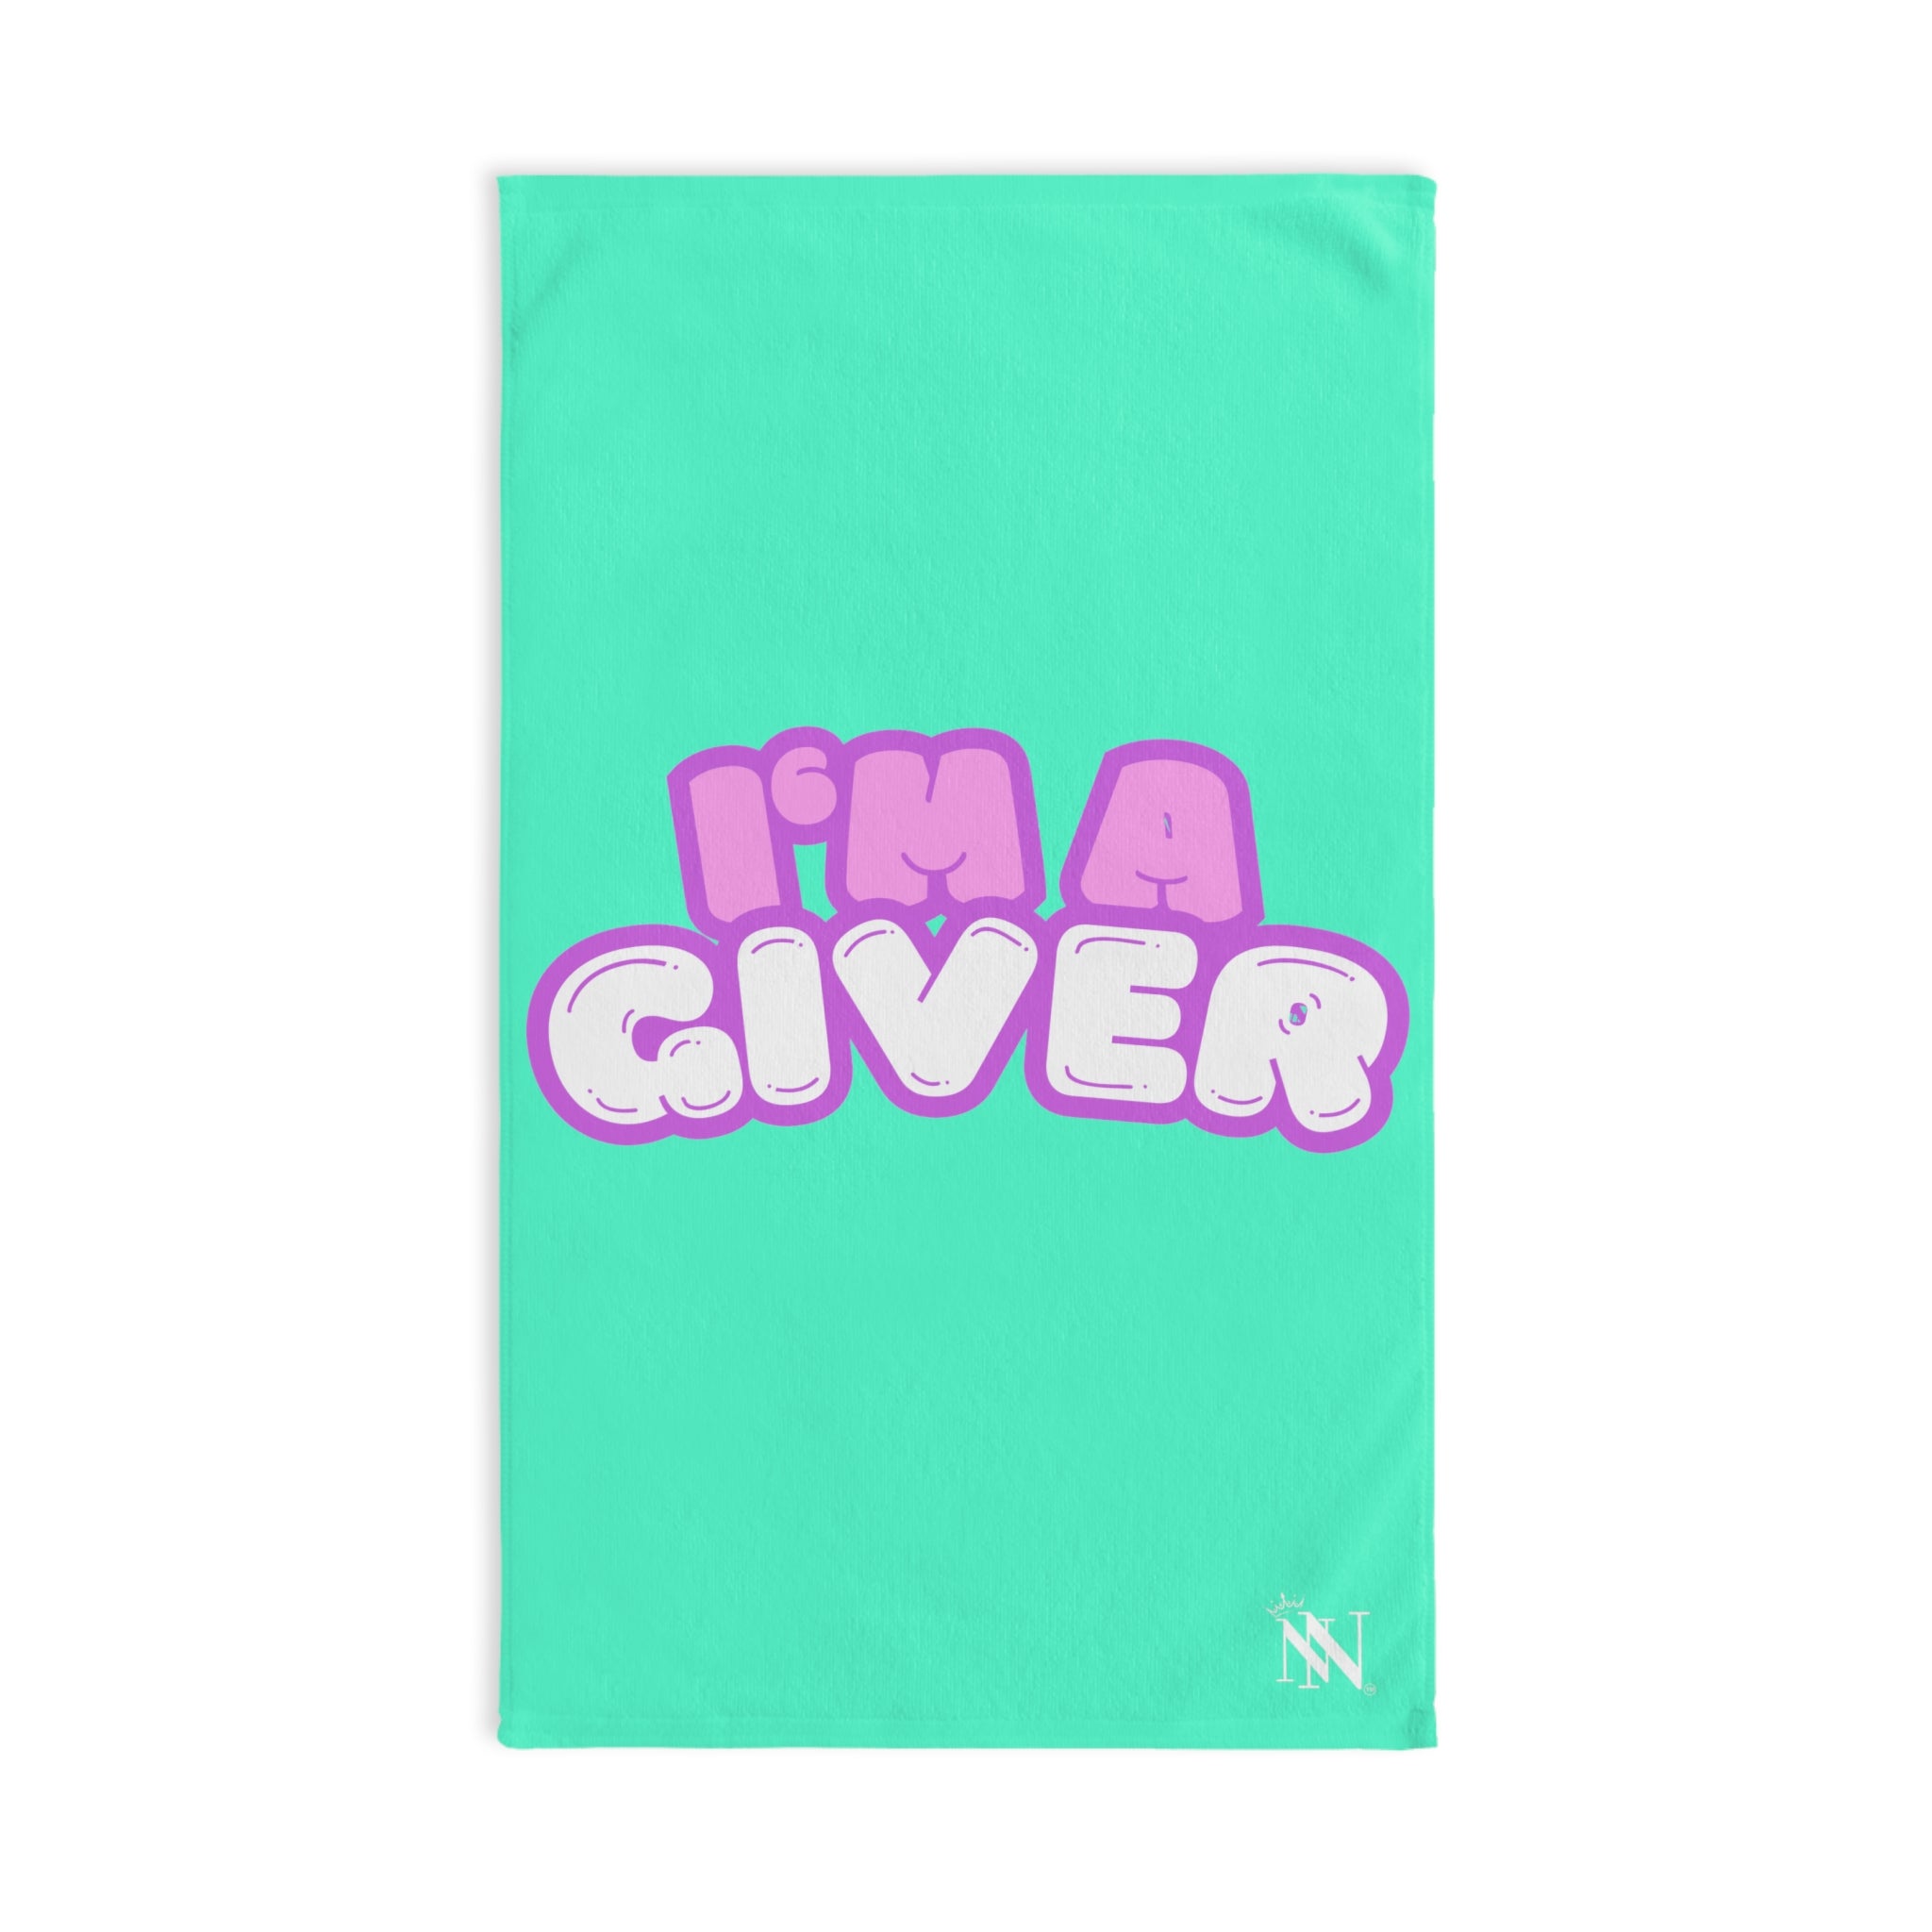 I'm a giver sex towel